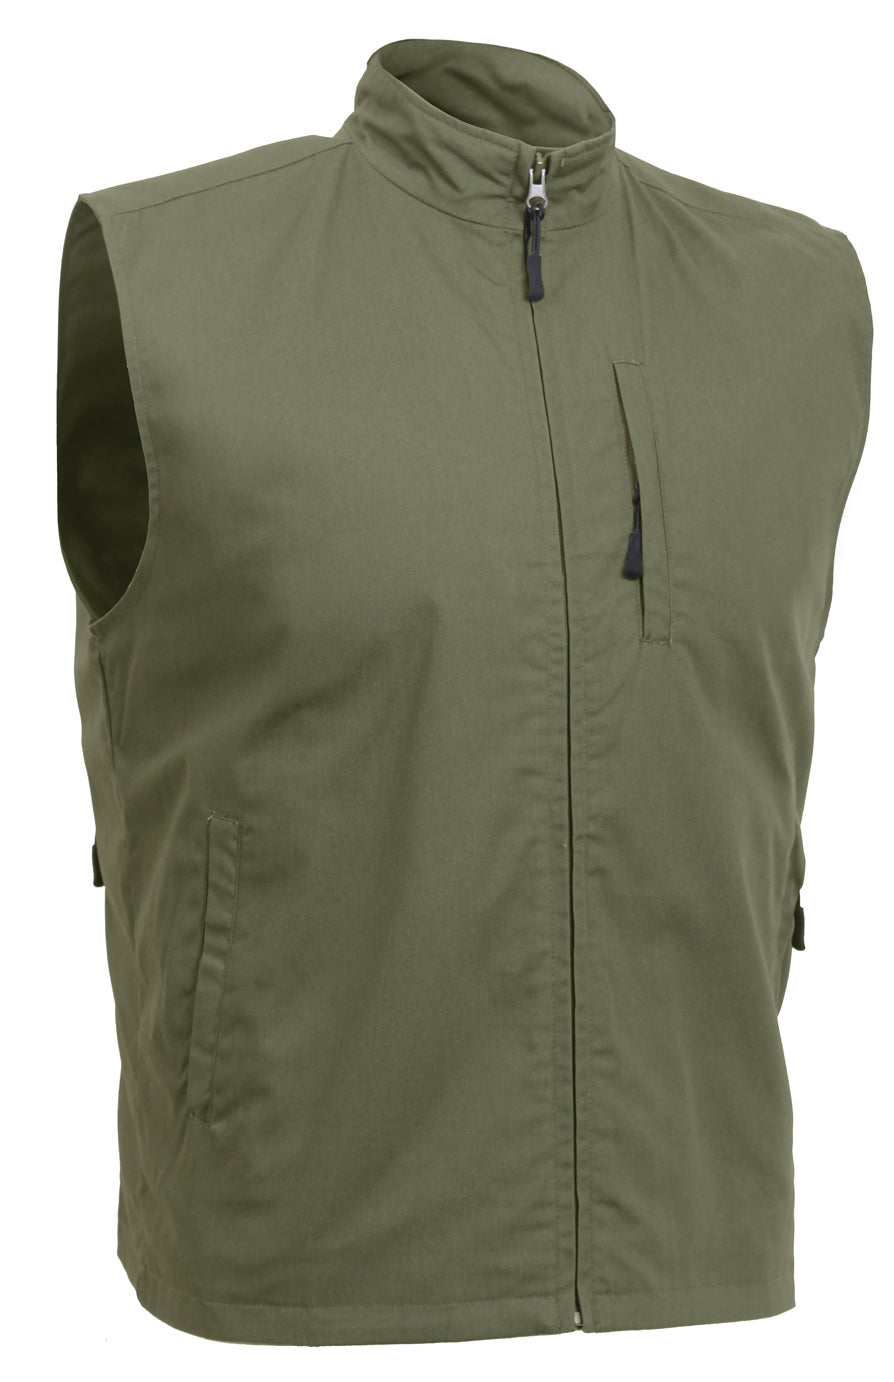 Olive Drab Undercover Travel Vest - Men's 12 Pocket Tactical Vest Rothco